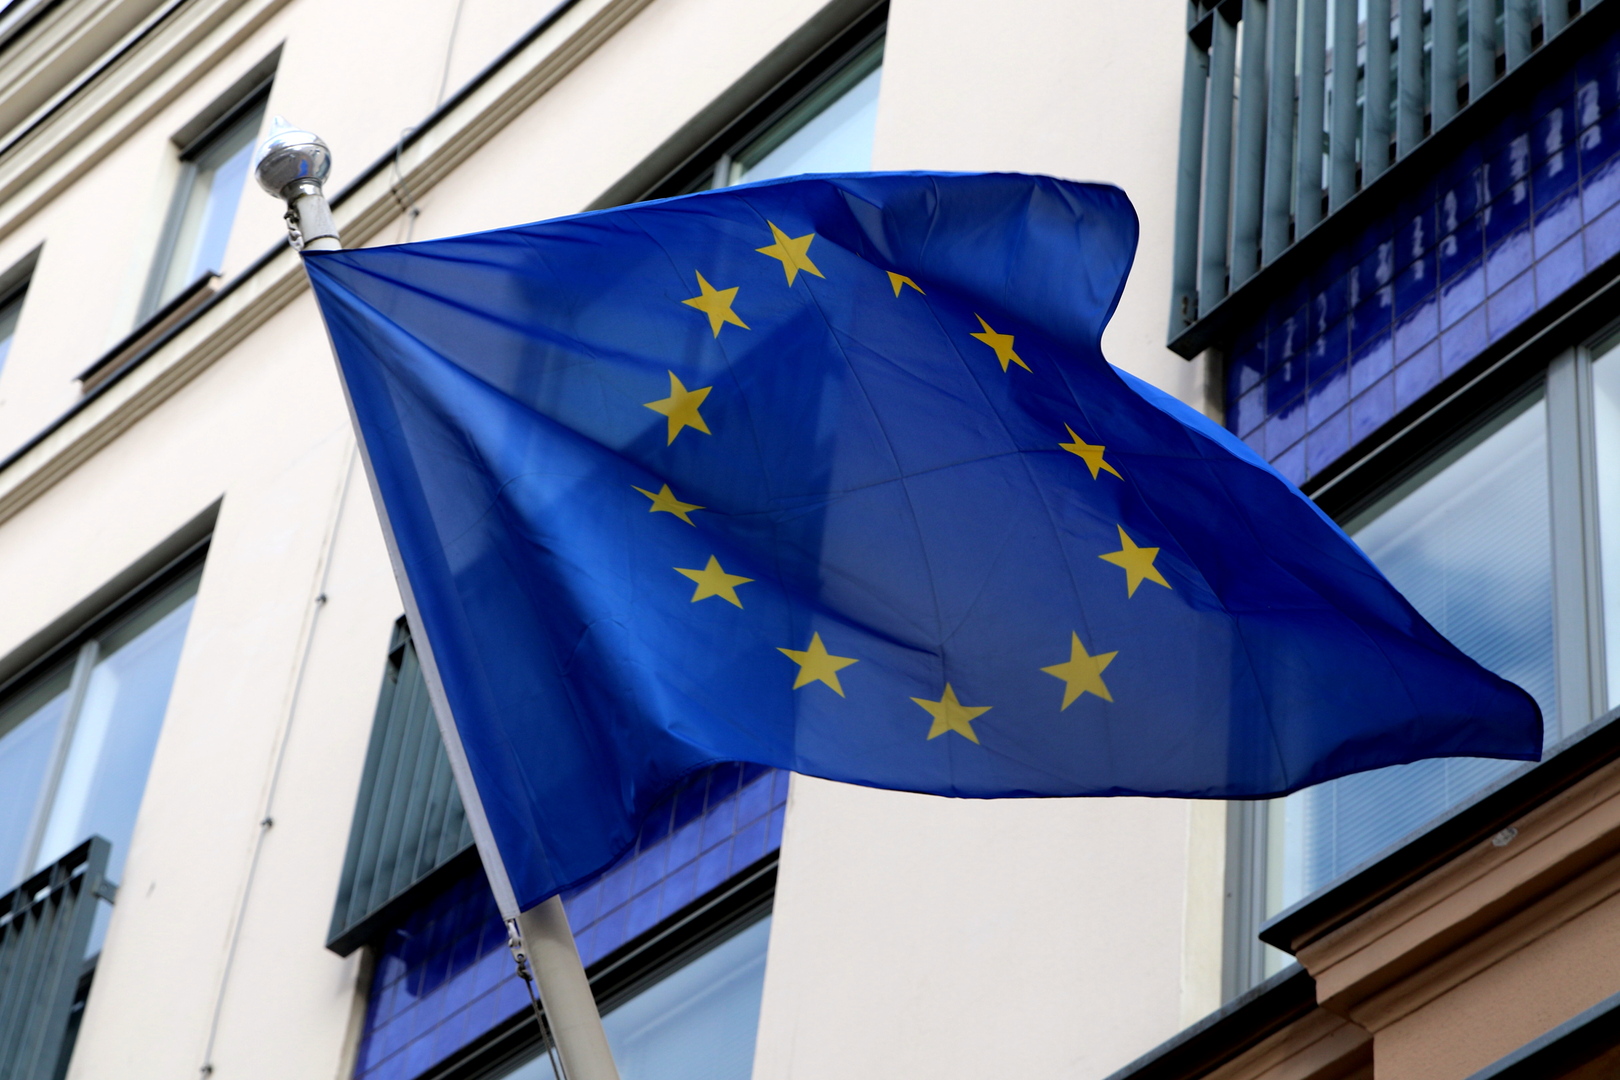 ممثلو الاتحاد الأوروبي يمددون إعفاء بضائع أوكرانية من الرسوم الجمركية